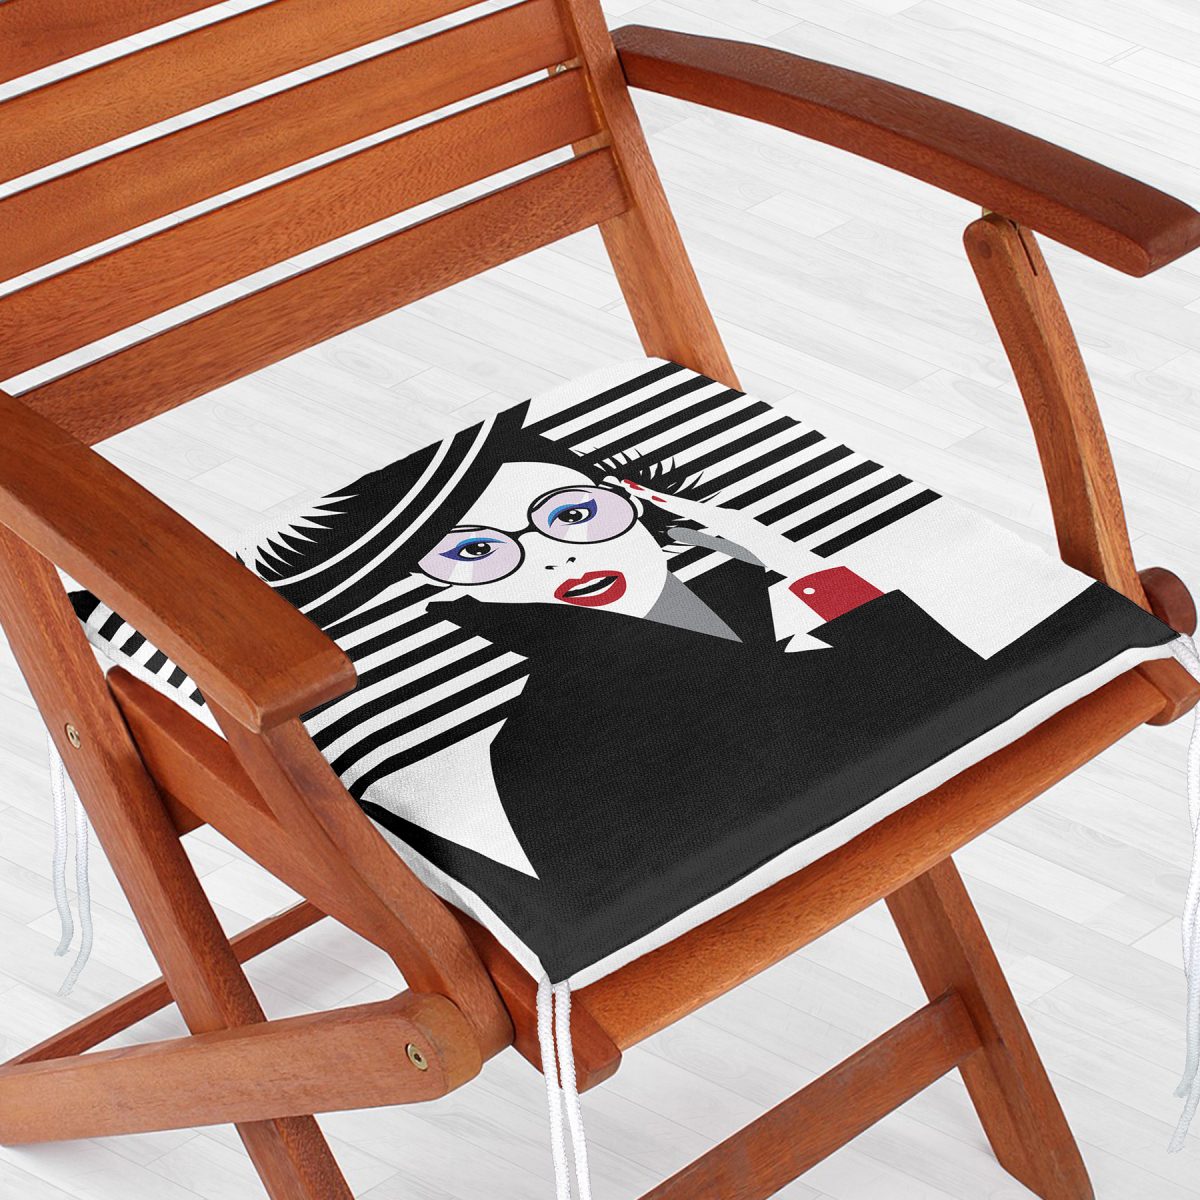 Siyah Beyaz Fashion Woman Tasarımlı Dekoratif Fermuarlı Sandalye Minderi Realhomes